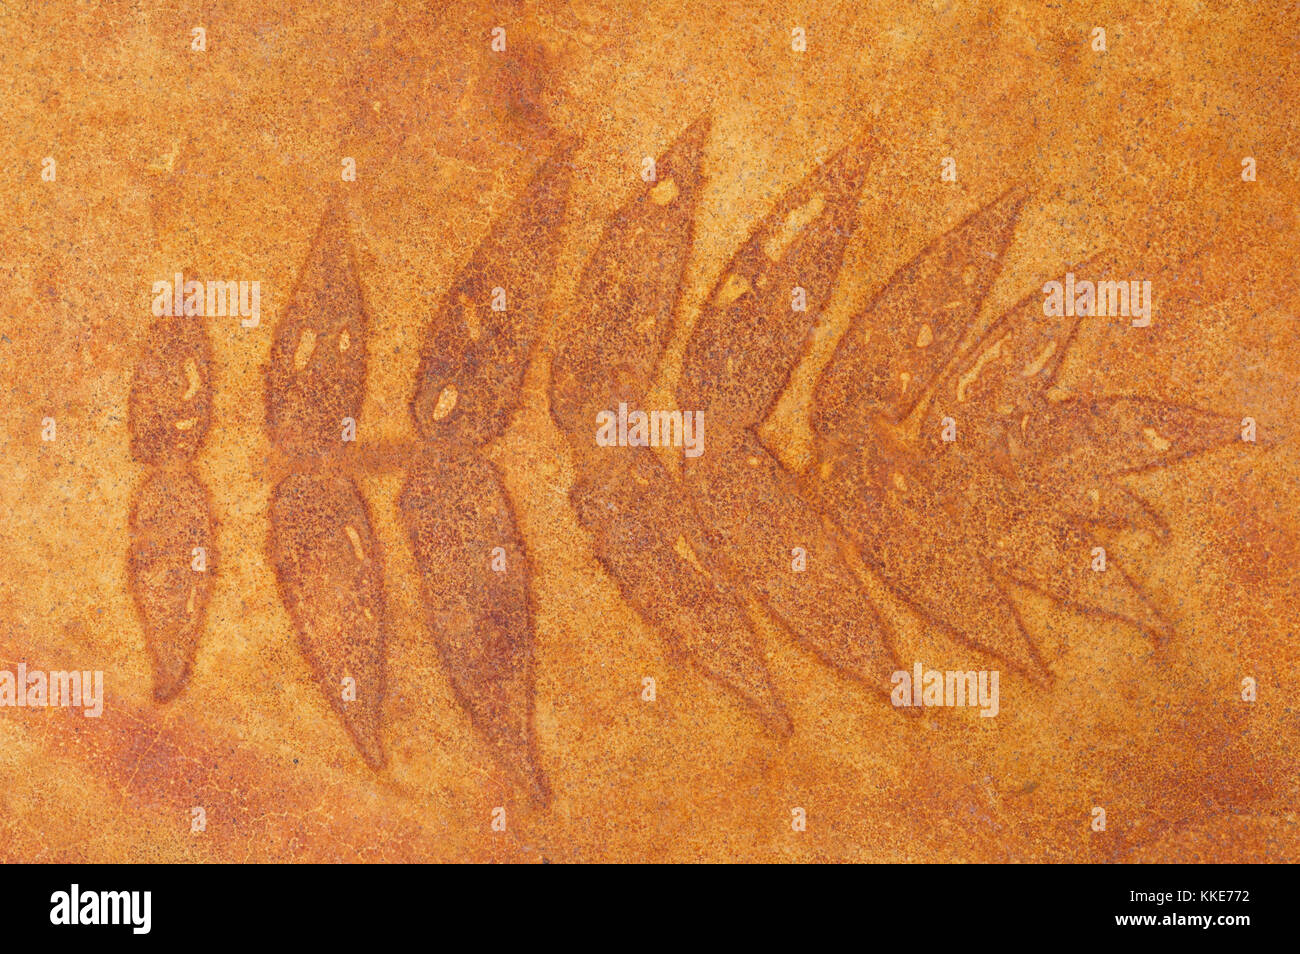 El sulfato de hierro tiñe suelo de hormigón con patrón de hojas de zumaque Foto de stock